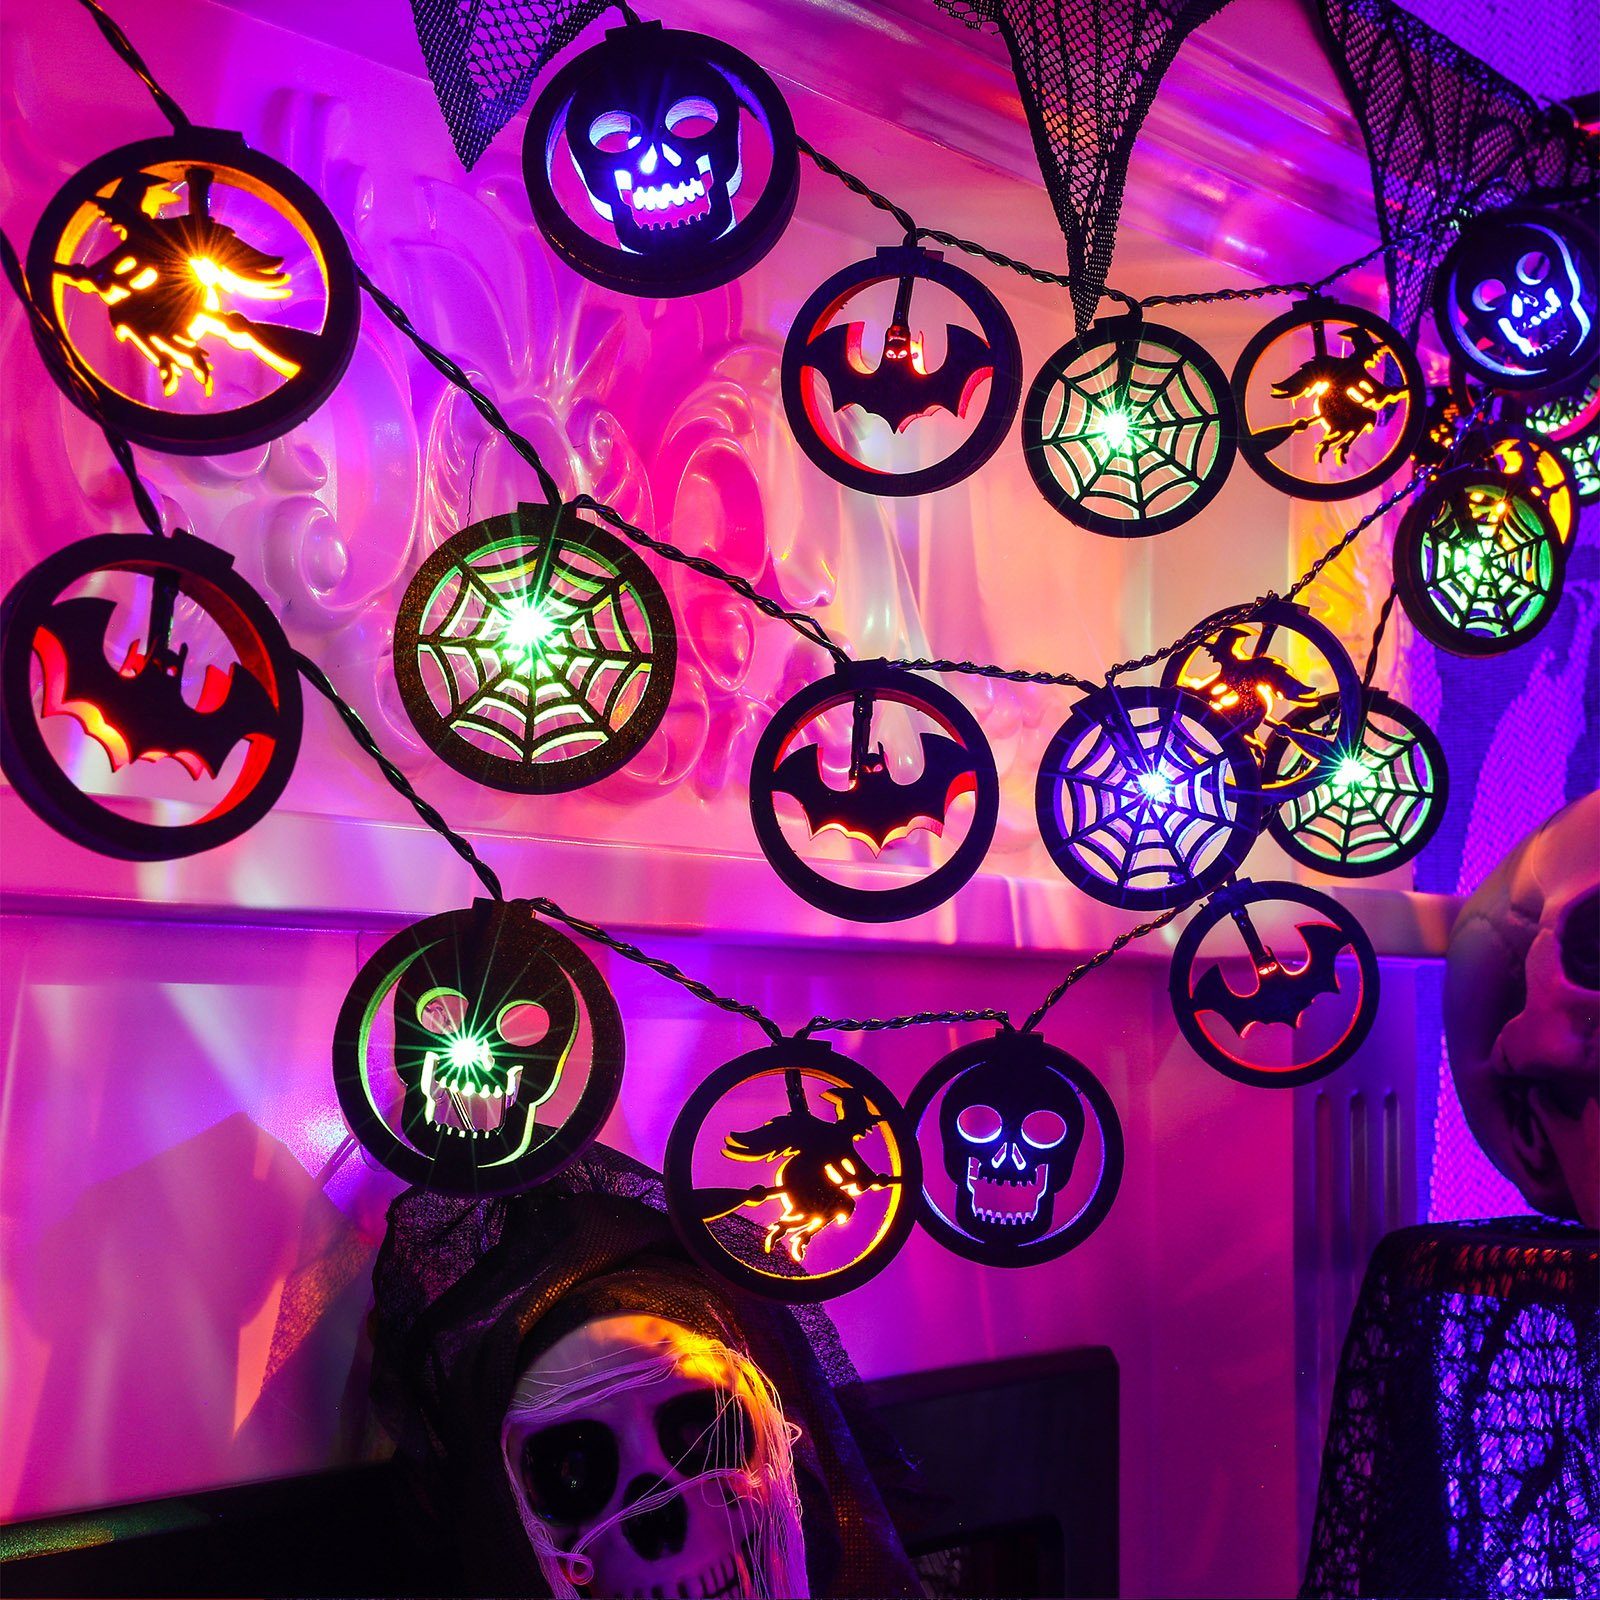 MUPOO LED-Lichterkette LED Nachtlicht Halloween Lichterkette Deko,3m Beleuchtung, 3A - A Mehrfarbig Batterie-Stromversorgung, Stil 20 Multicolor LED,Wasserdicht,Batterie